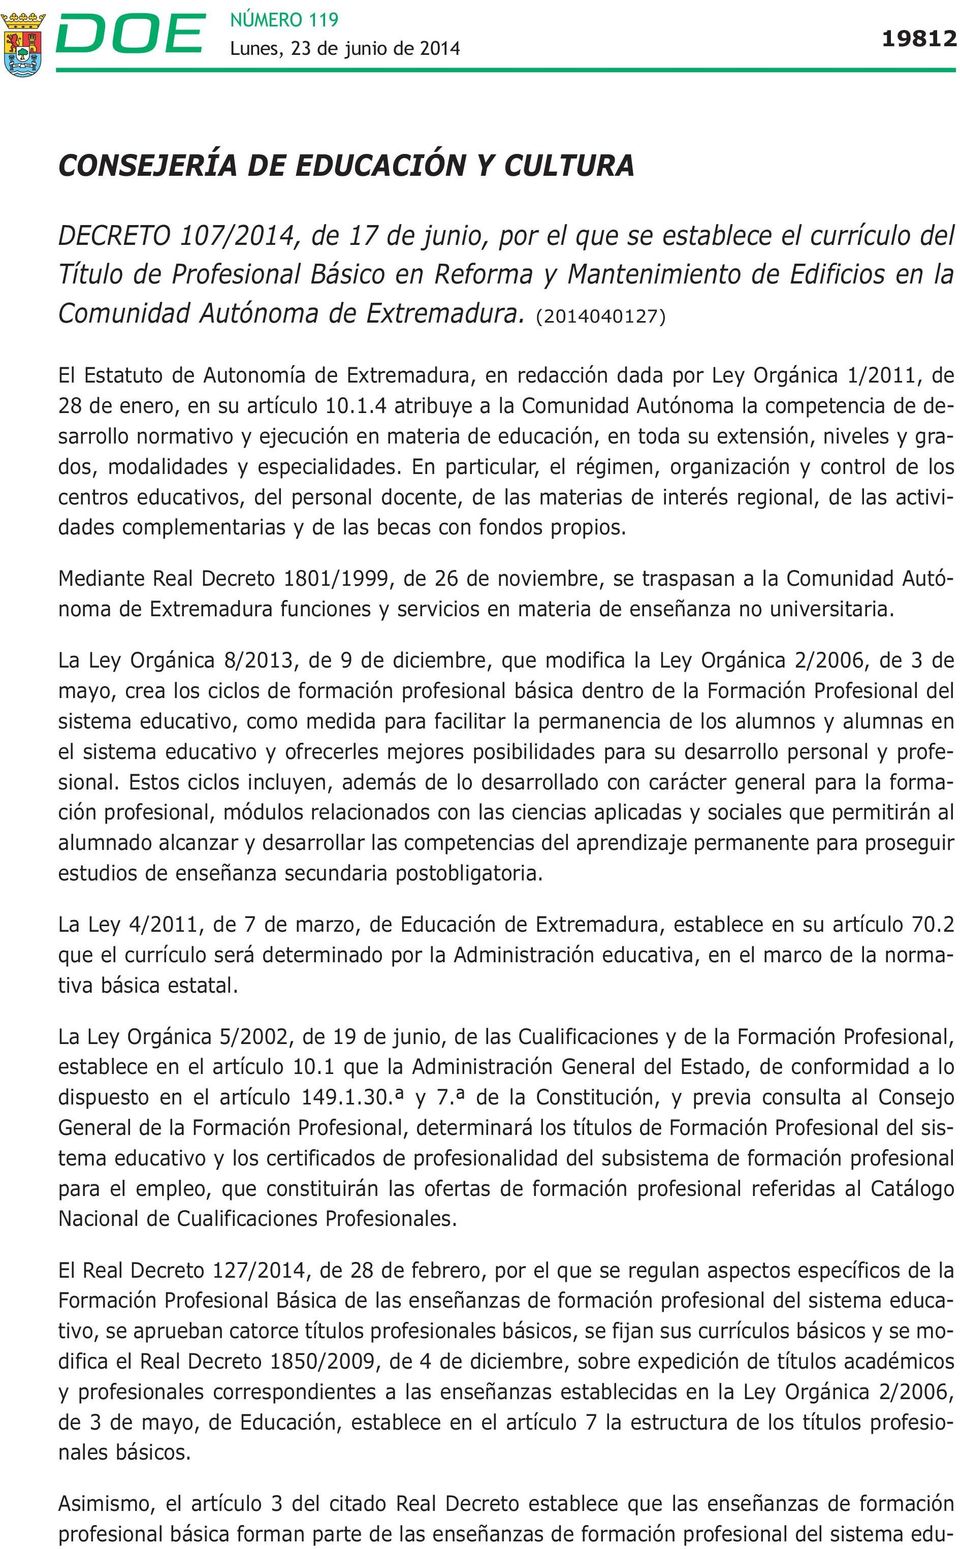 040127) El Estatuto de Autonomía de Extremadura, en redacción dada por Ley Orgánica 1/2011, de 28 de enero, en su artículo 10.1.4 atribuye a la Comunidad Autónoma la competencia de desarrollo normativo y ejecución en materia de educación, en toda su extensión, niveles y grados, modalidades y especialidades.